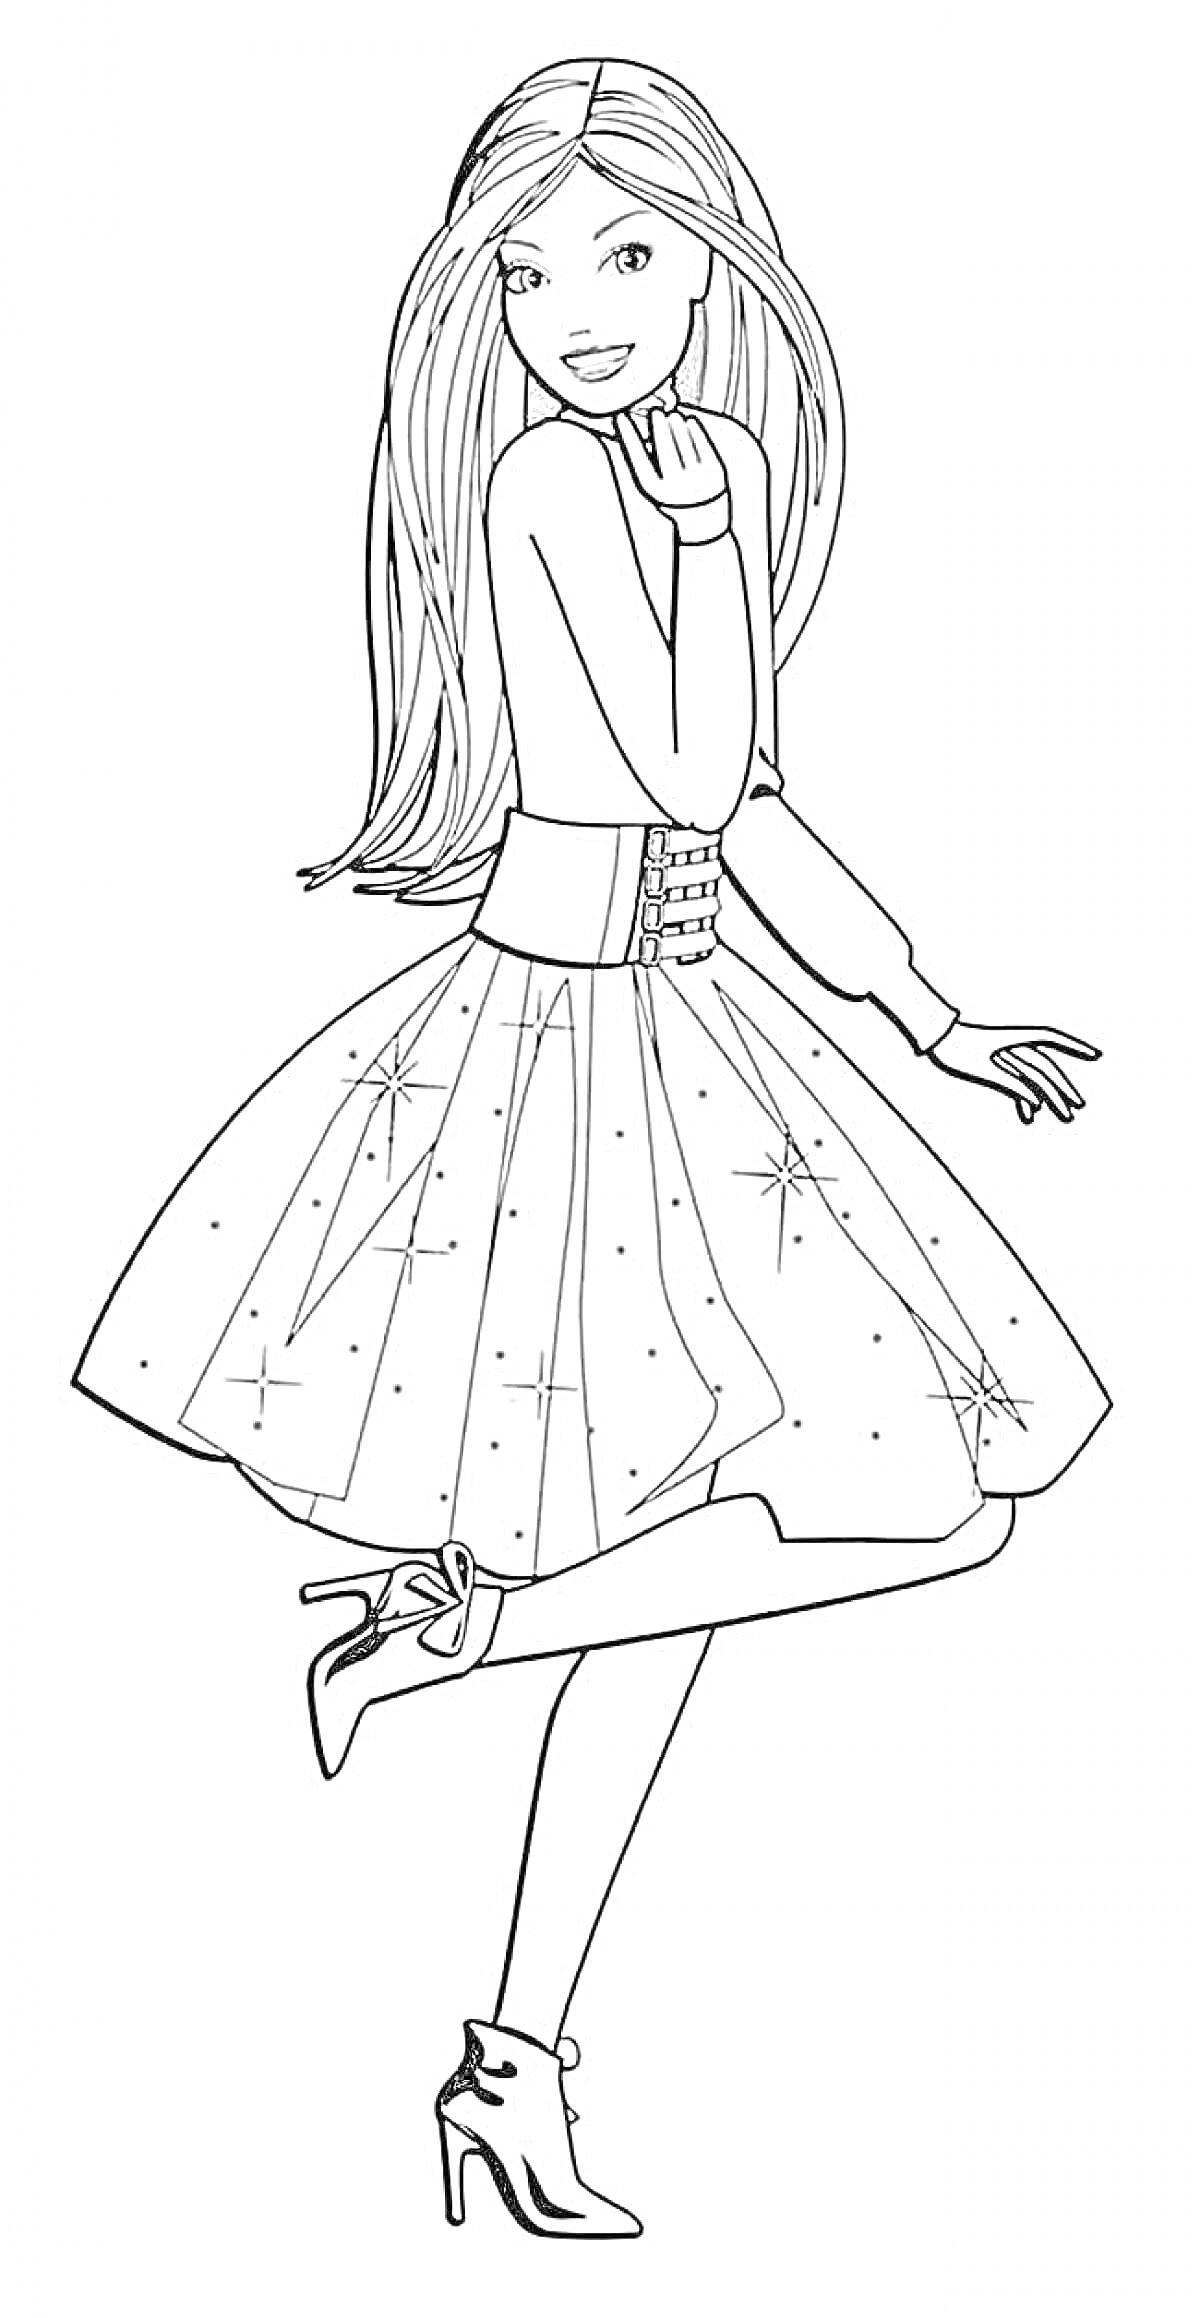 Барби в бальном платье с длинными волосами и высокими каблуками